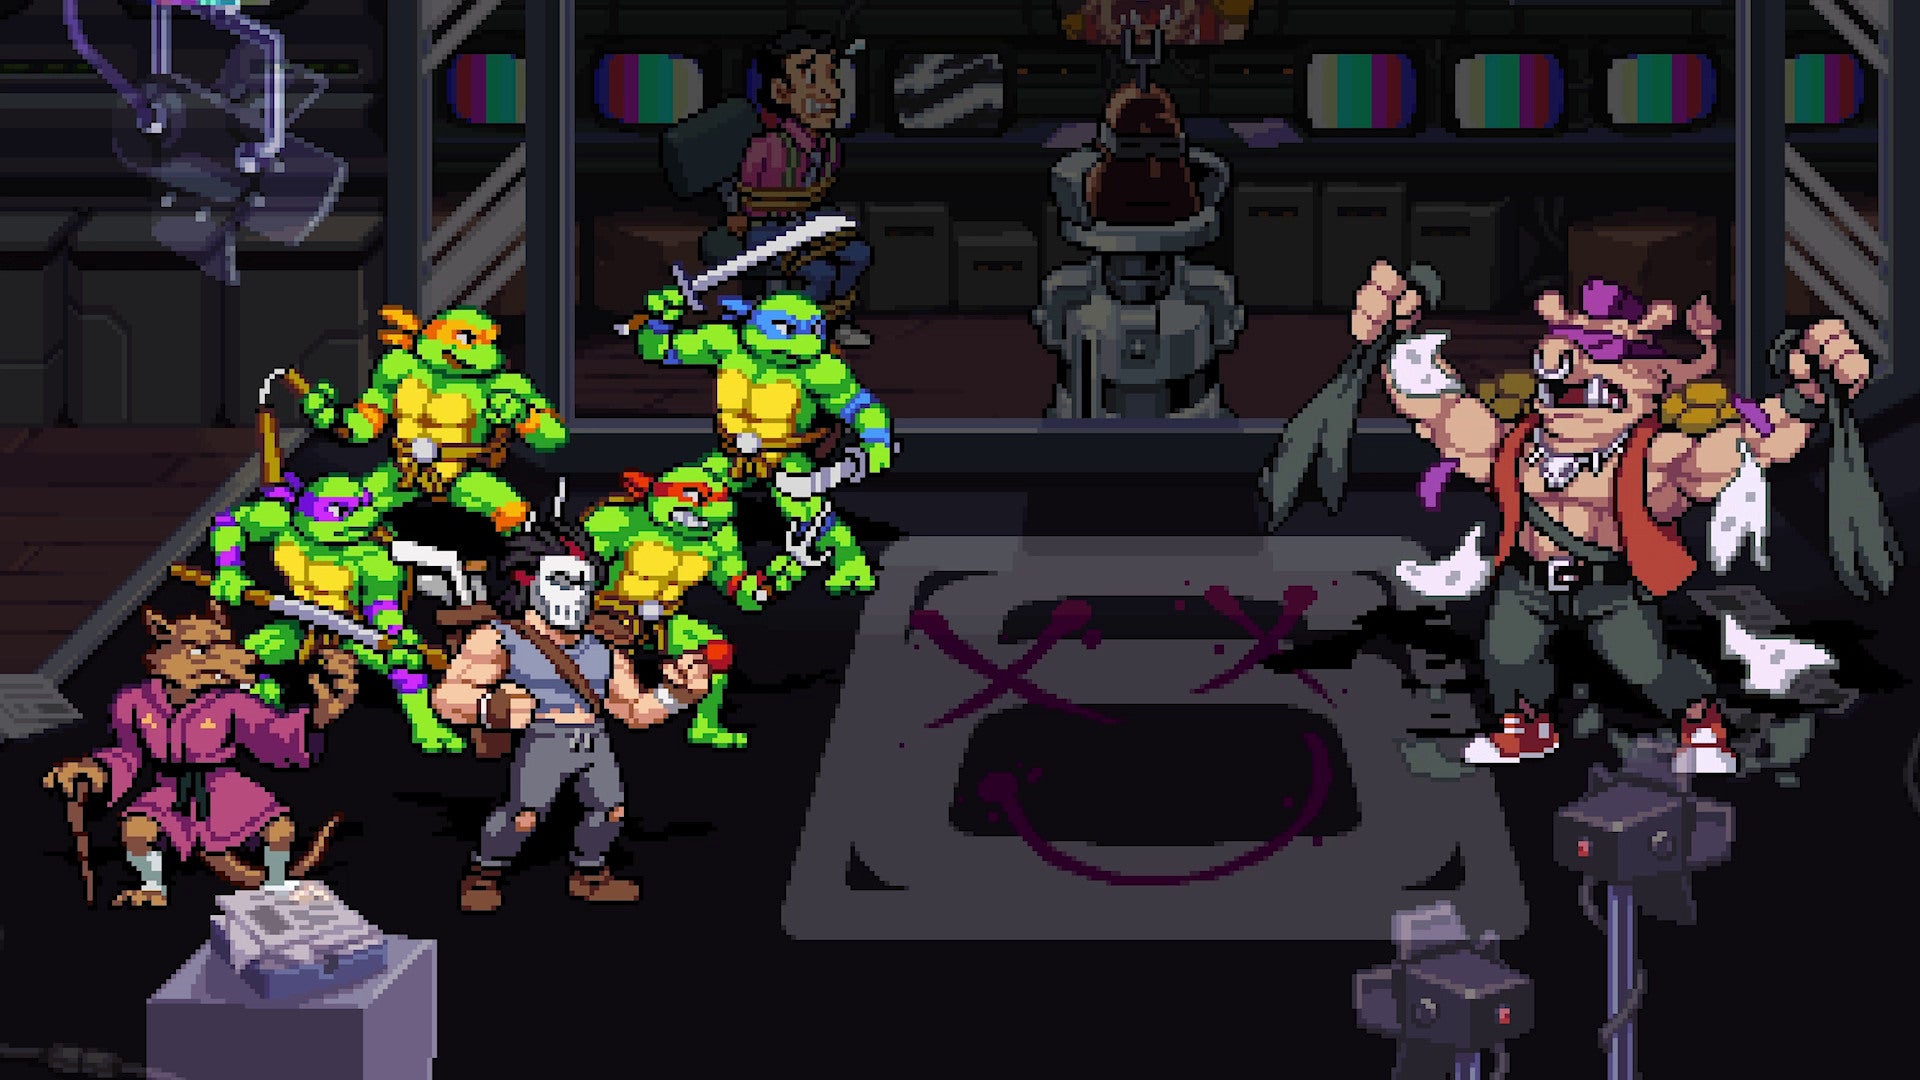 PS5 Teenage Mutant Ninja Turtles: Shredder's Revenge